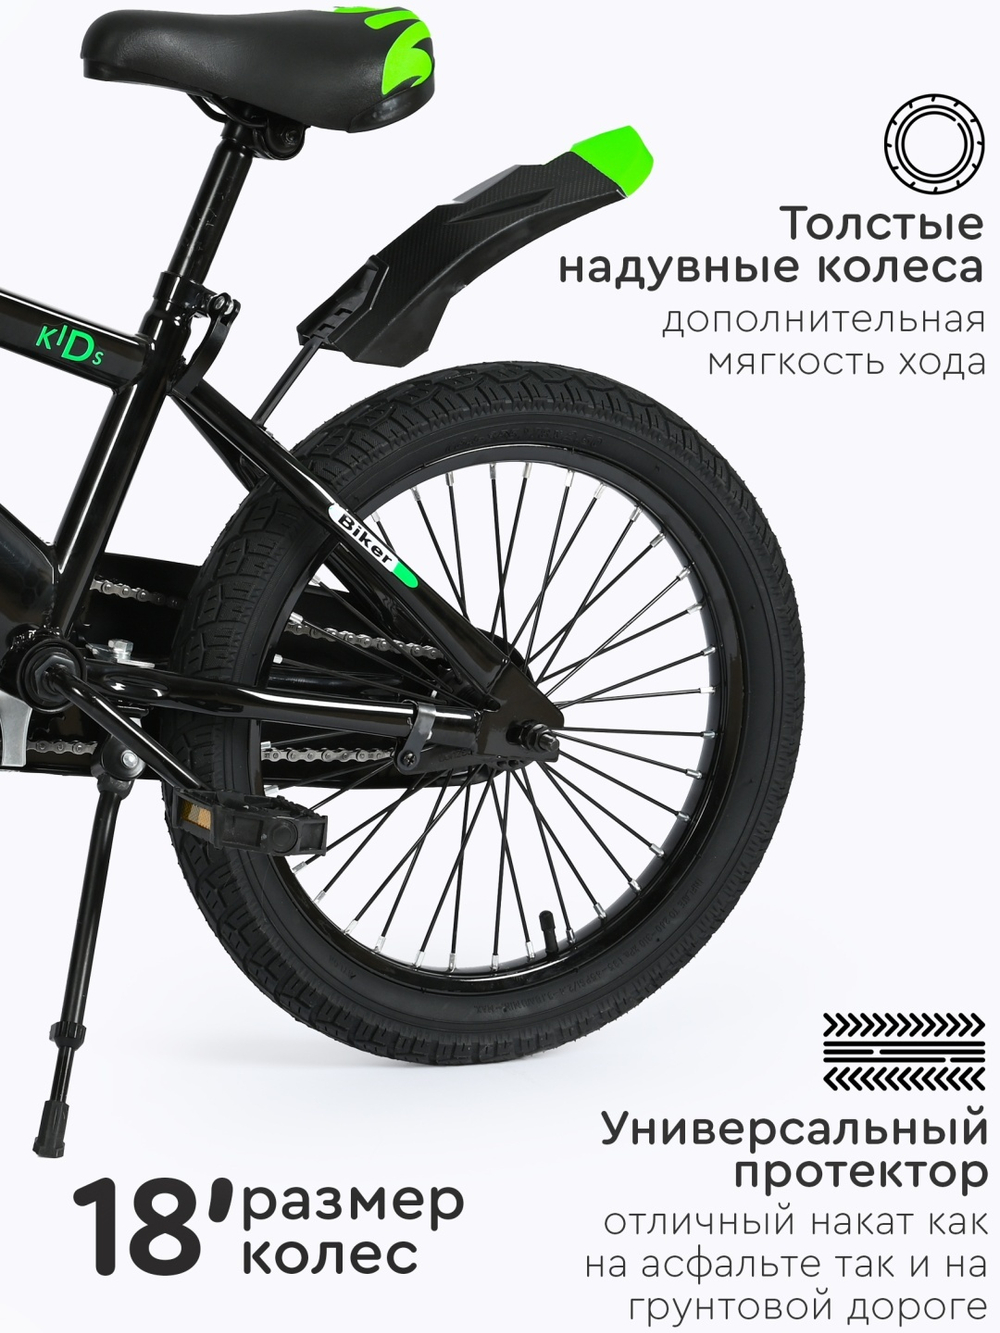 Двухколёсный велосипед TOMIX Biker зеленый